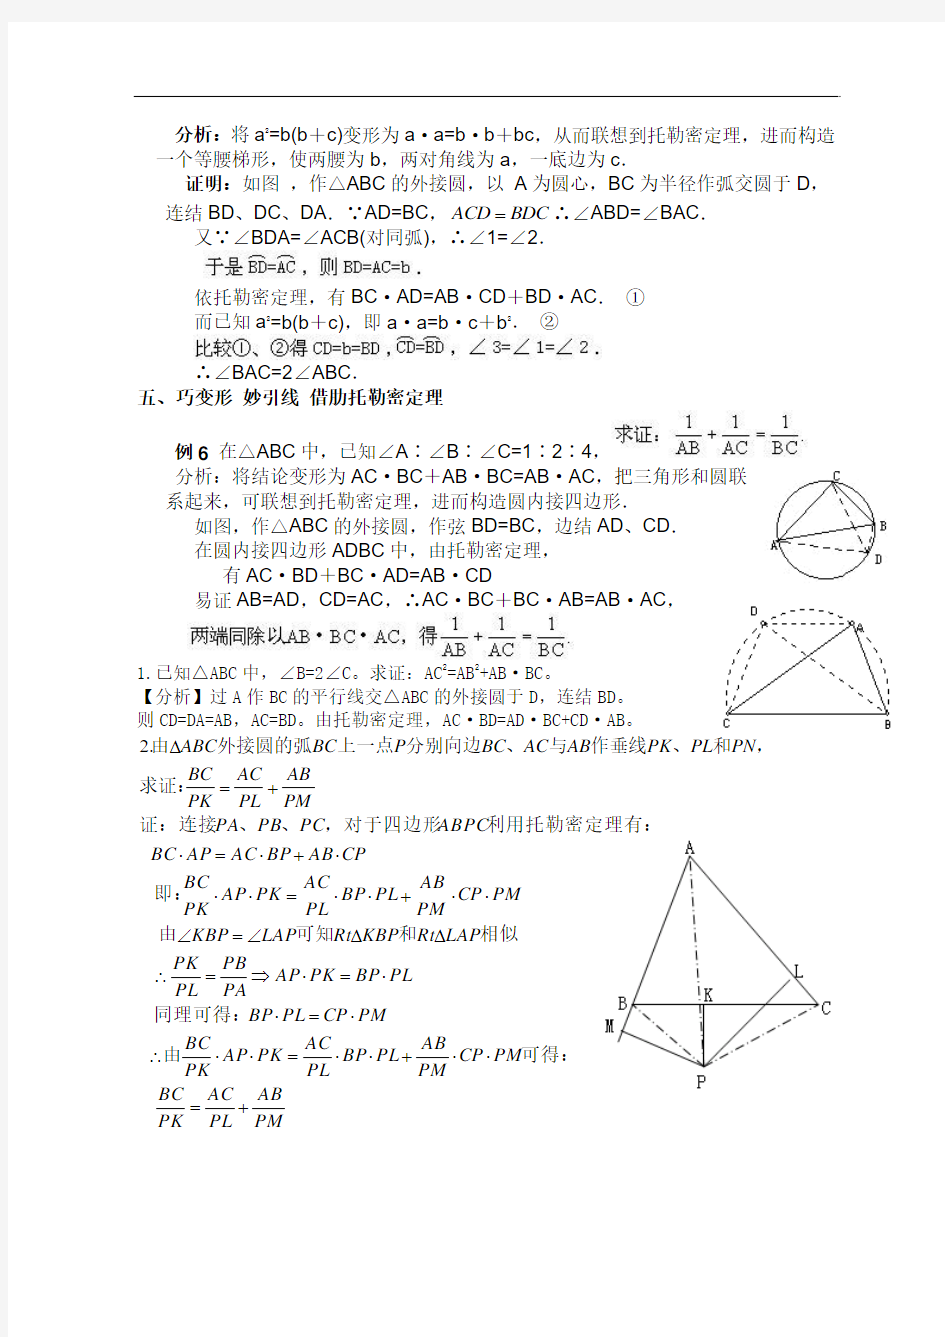 高中数学竞赛 平面几何的几个重要定理——托勒密定理